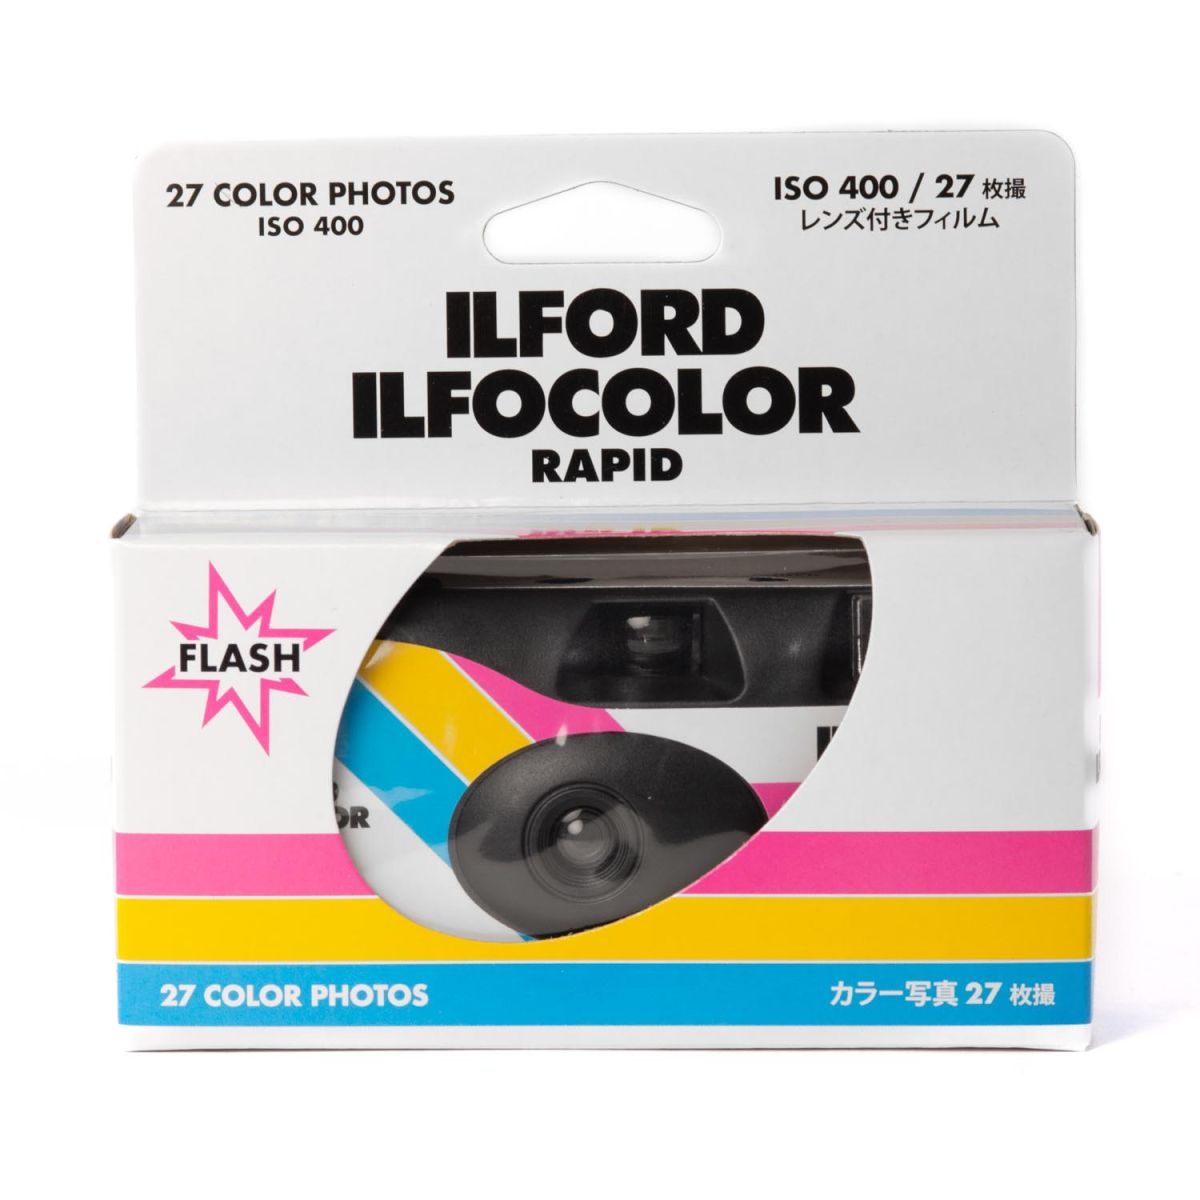 Ilford Ilfocolor Rapid Retro Camera Jetable